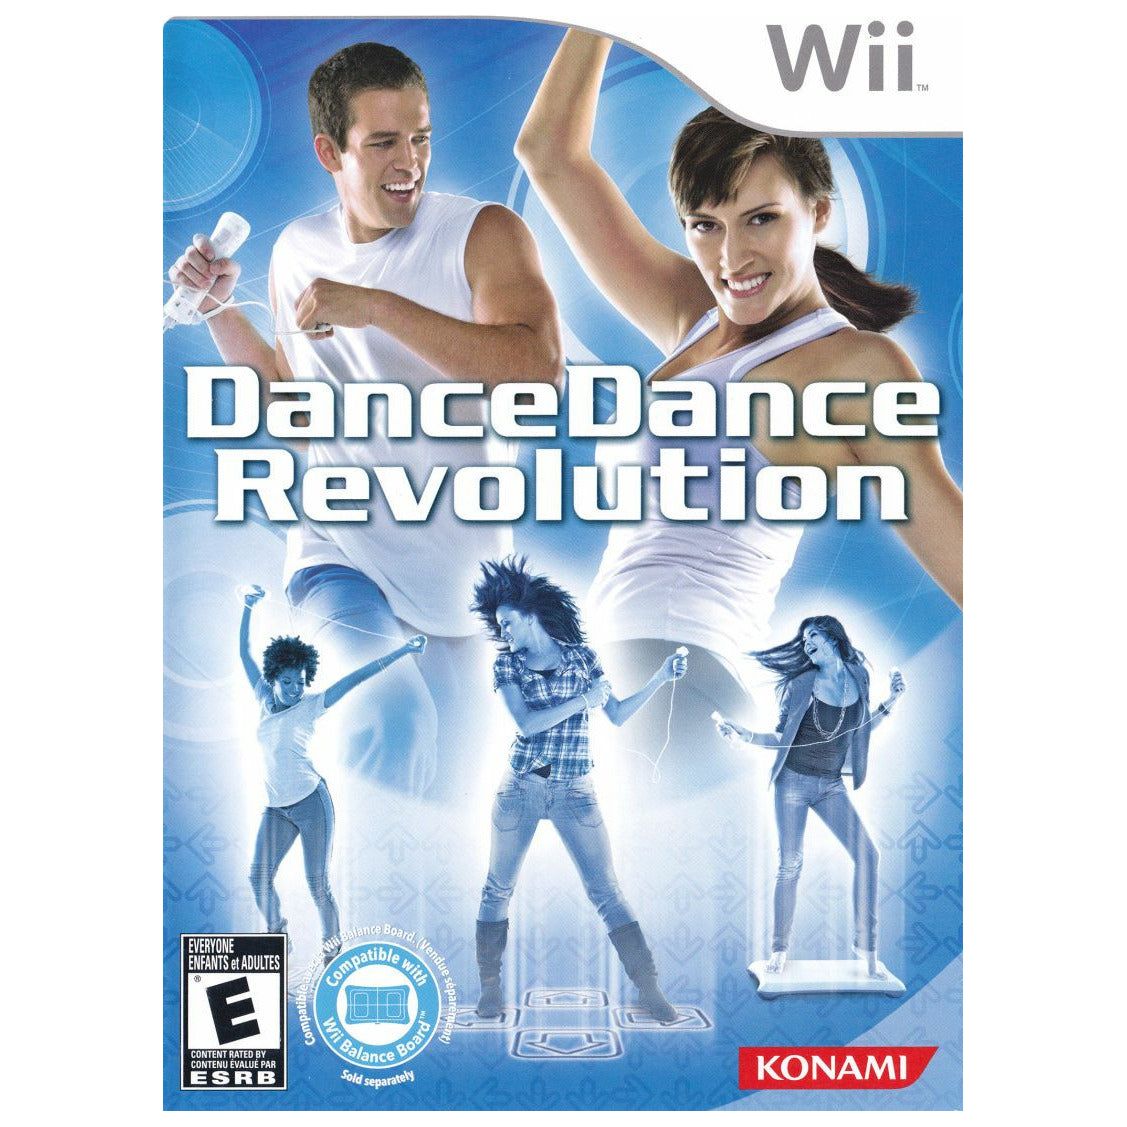 Wii - Danse Danse Révolution